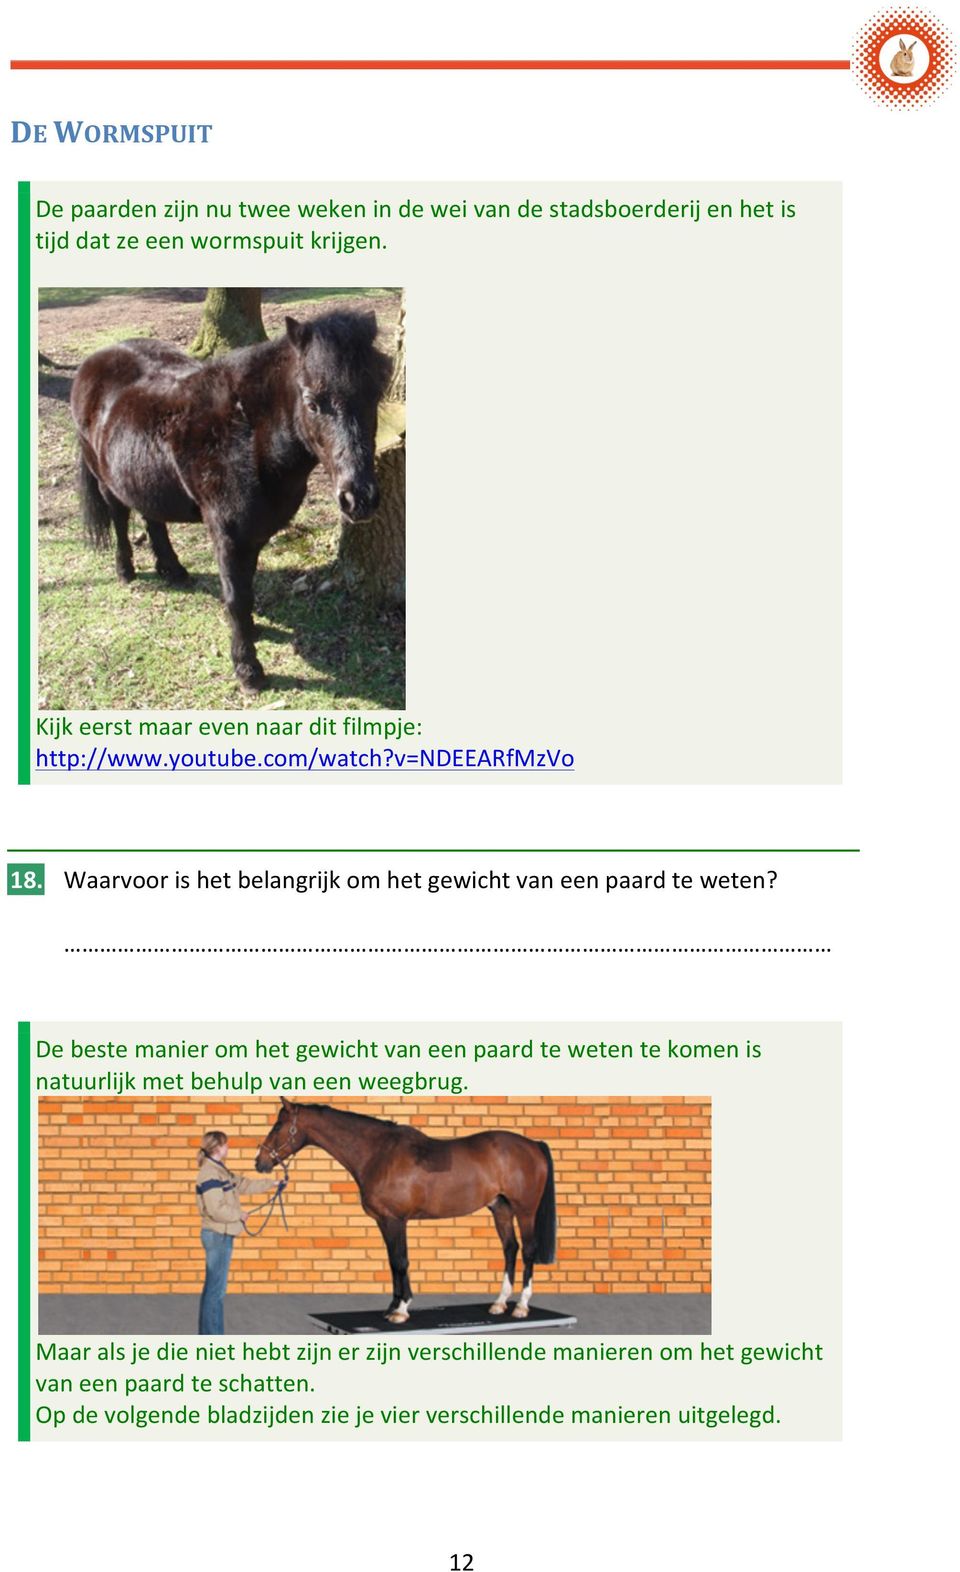 Waarvoor is het belangrijk om het gewicht van een paard te weten?